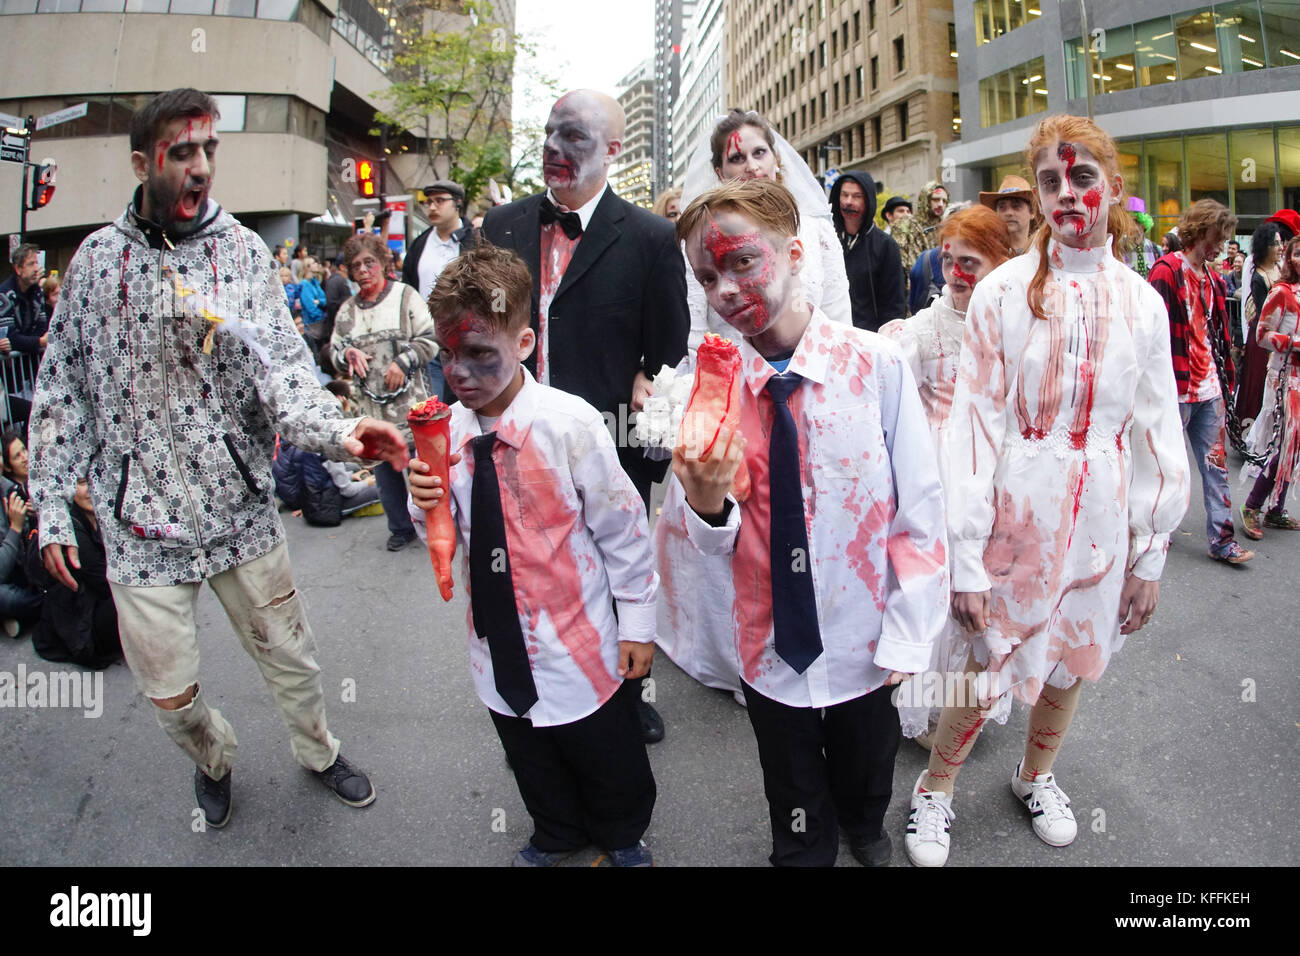 Montreal, Canadá. 28 de octubre de 2017. Los participantes de la caminata zombie de Montreal de 2017. Crédito: Mario Beauregard beaustock/alamy live news Foto de stock